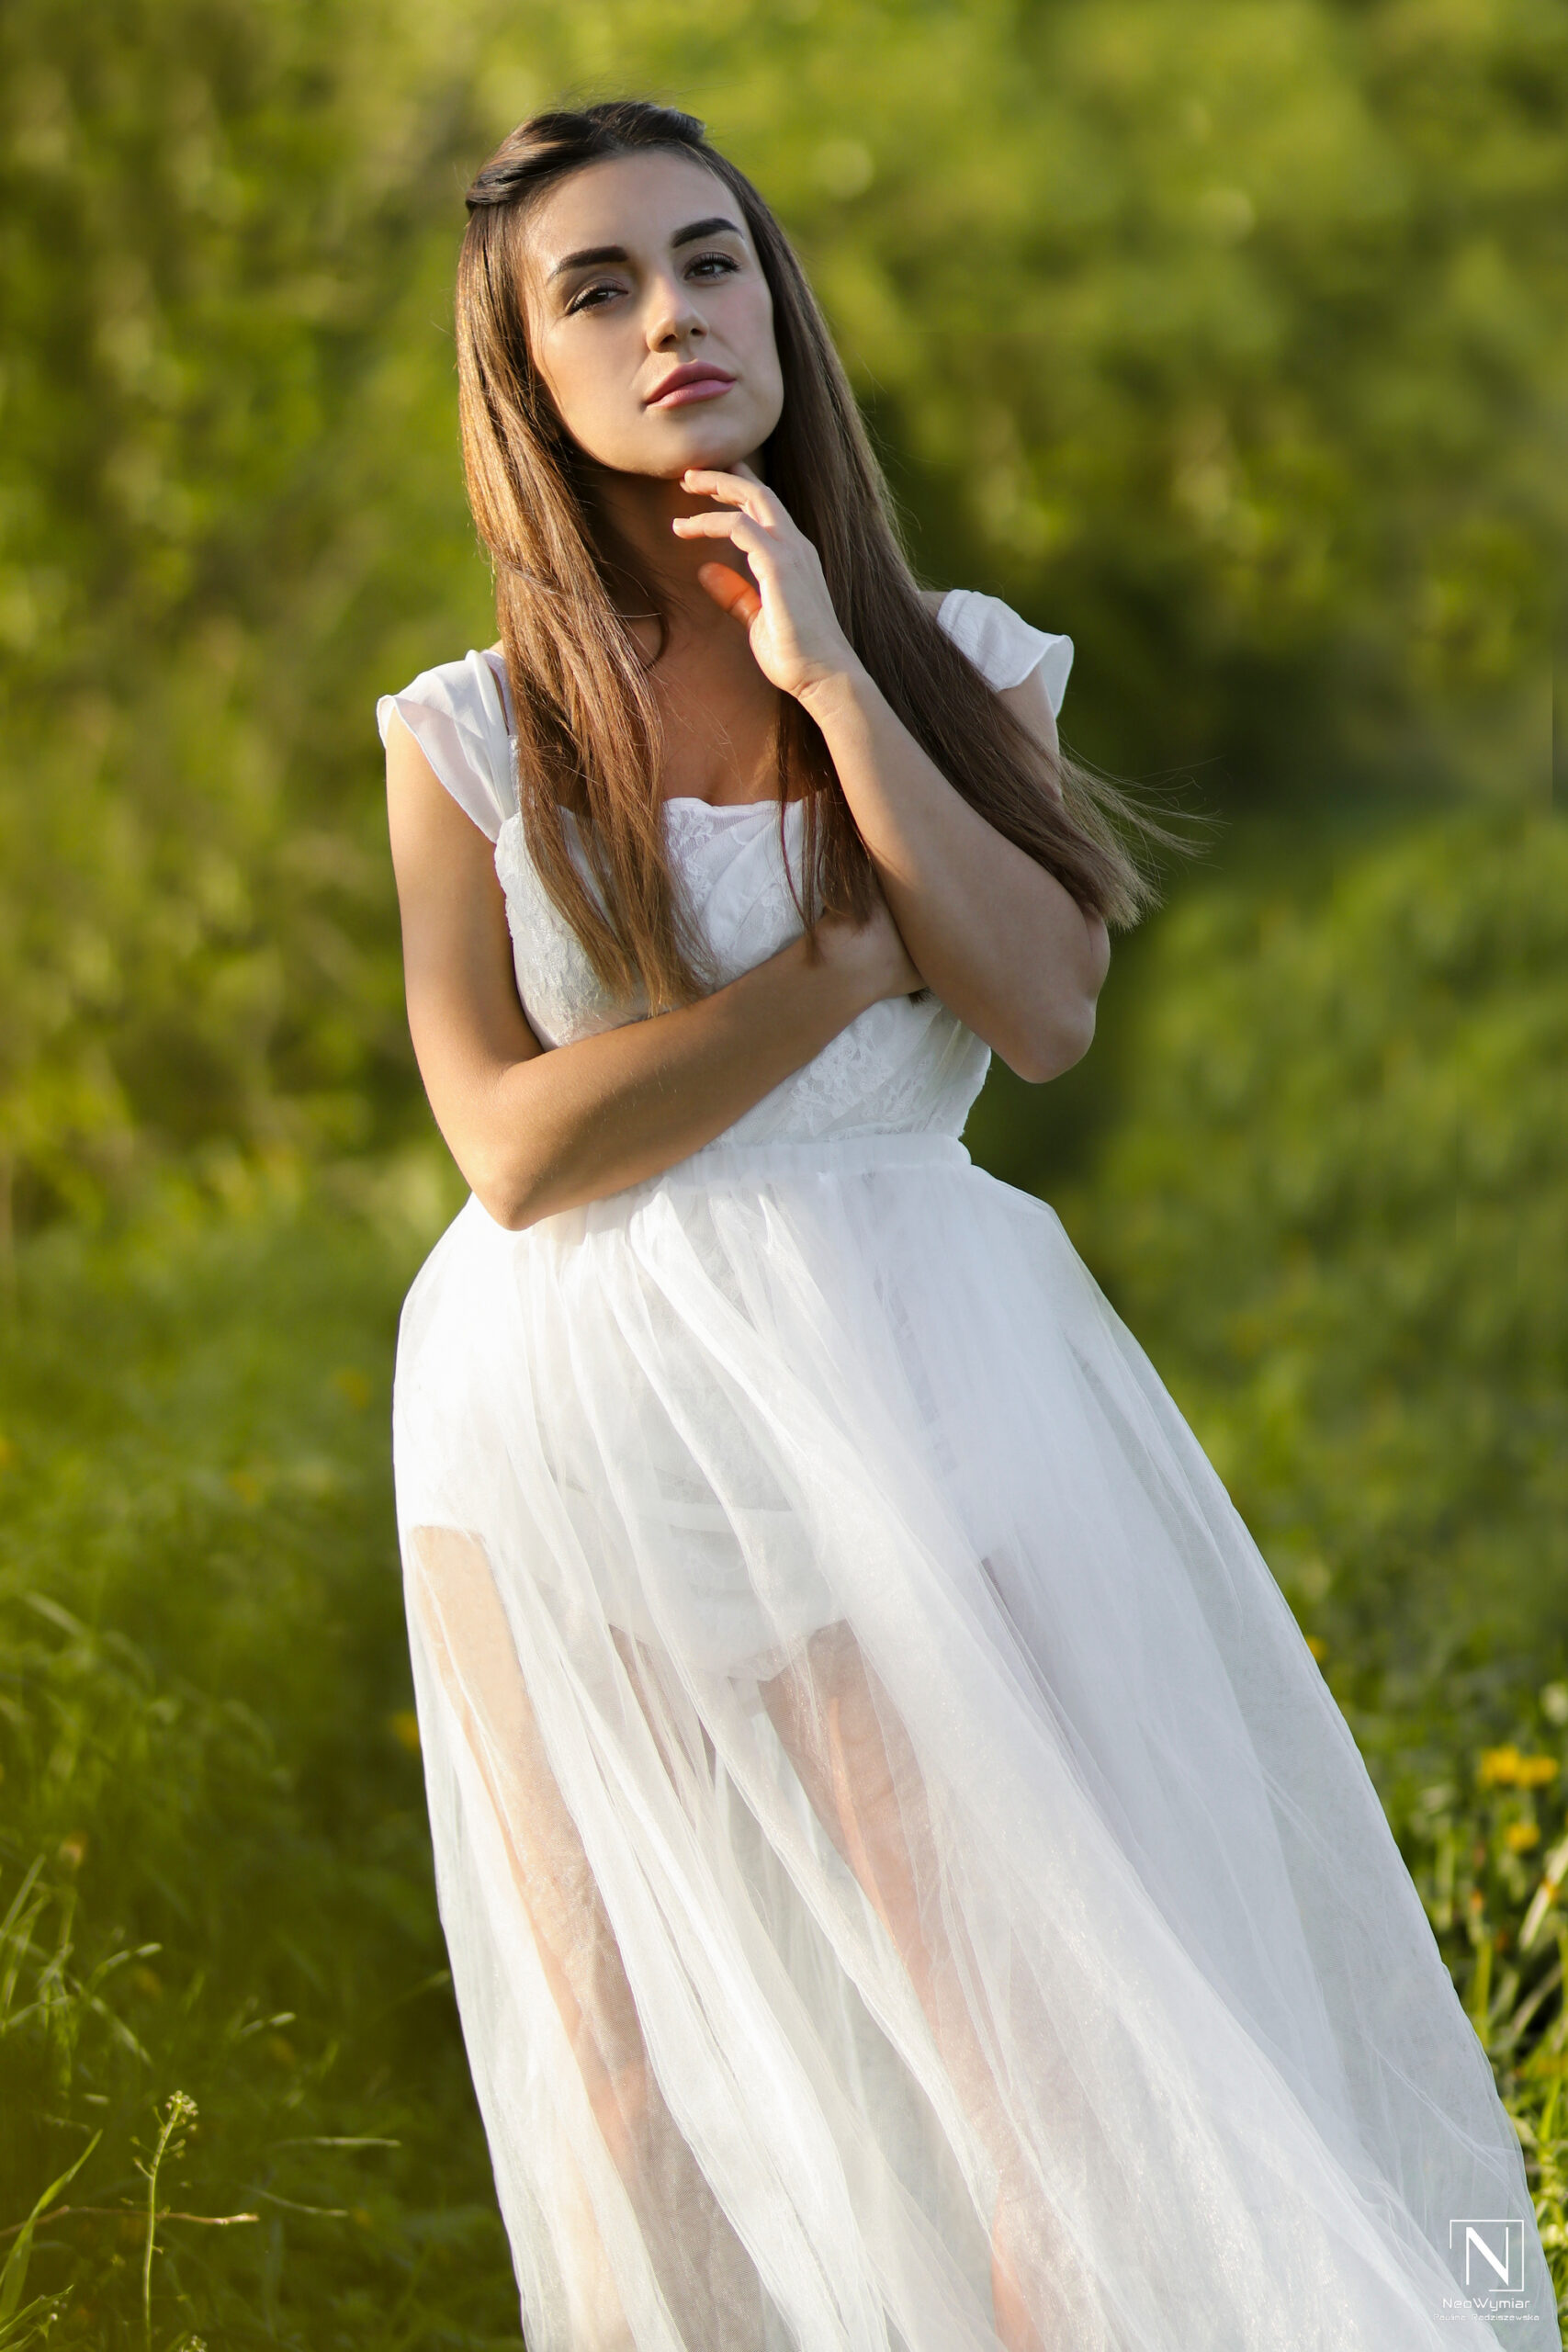 Sesja Agnieszki w białej sukni